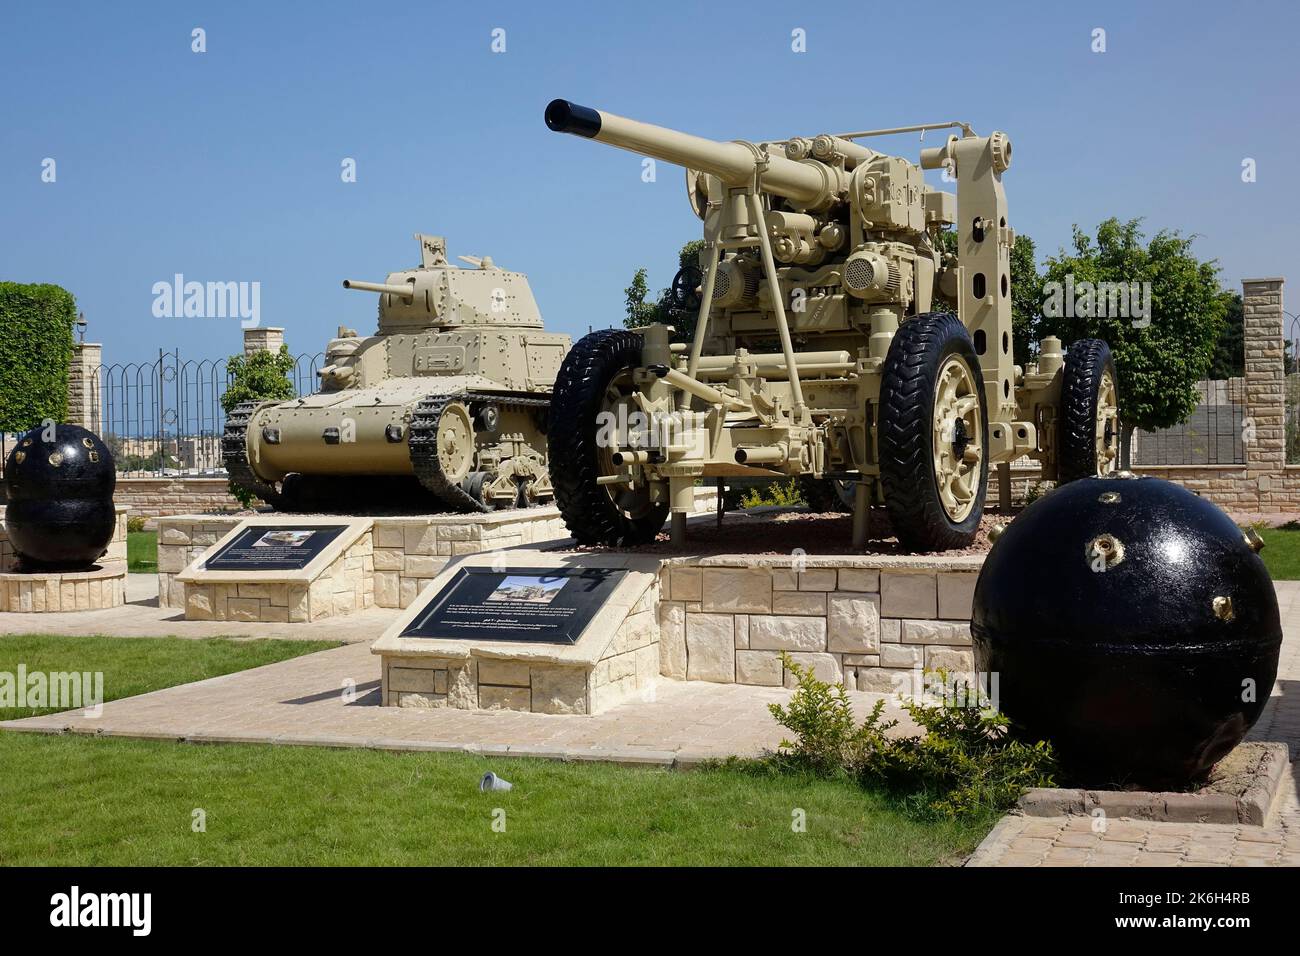 Egipto, el monumento conmemorativo de la guerra de El Alamein, museo, artillería y tanque Foto de stock